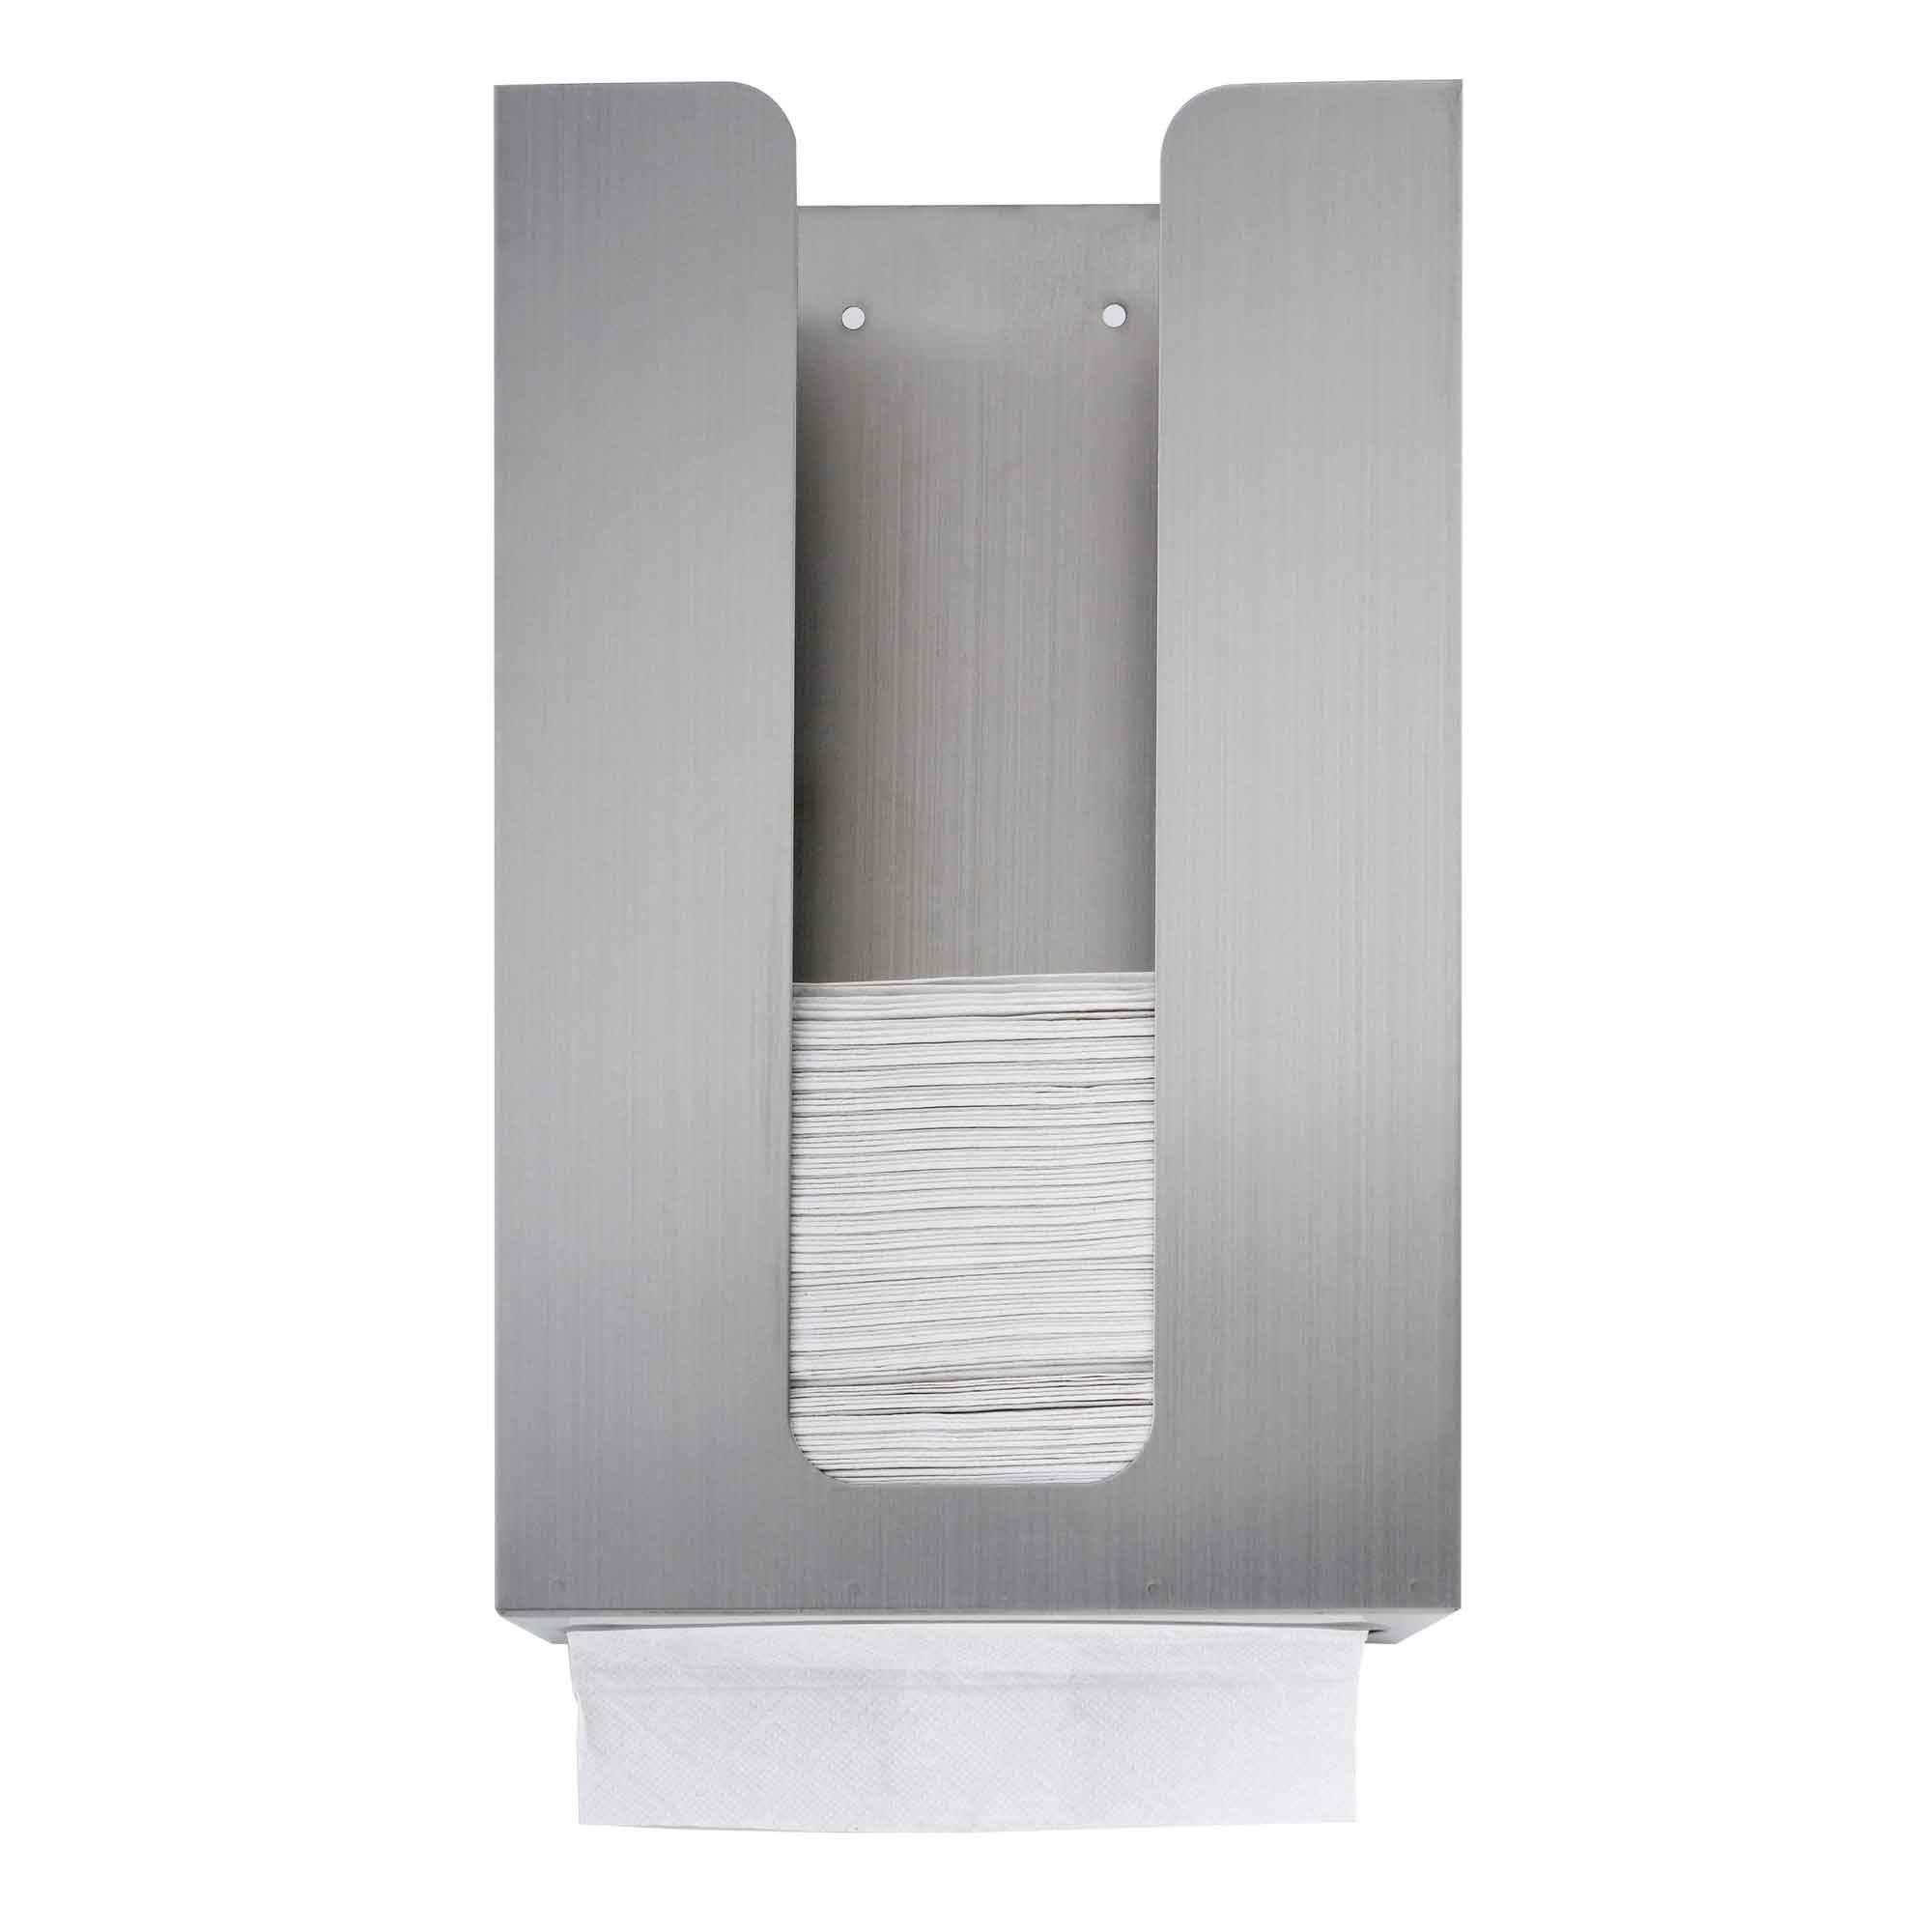 Behind The Mirror Paper Towel Holder, Behind The Mirror Paper Towel Holder,Paper  Towel Holder,behind the mirror paper towel dispenser